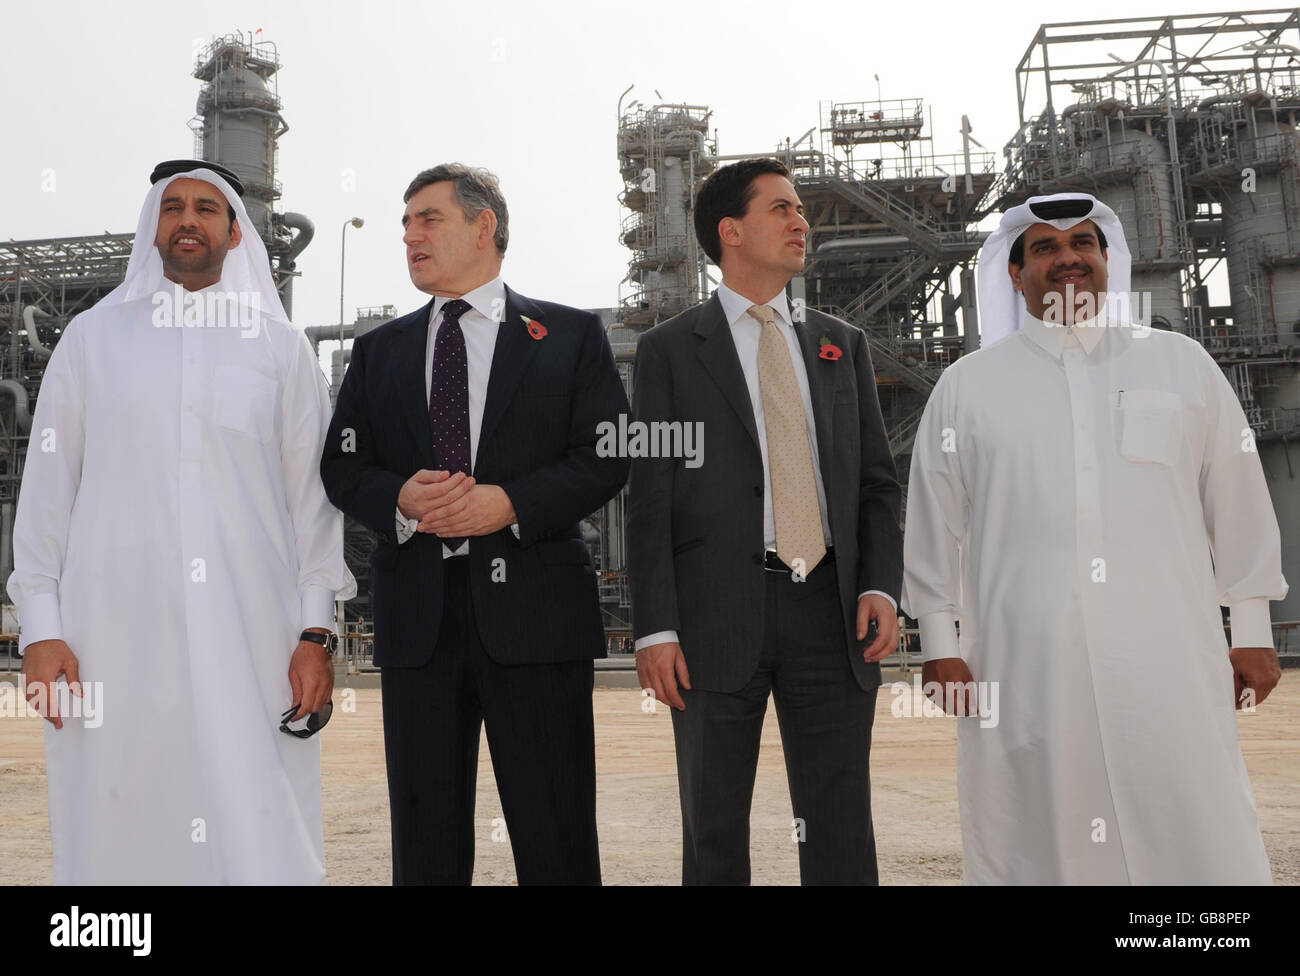 Il primo ministro Gordon Brown (secondo a sinistra) e il ministro per l'energia e il cambiamento climatico ed Miliband sono presenti intorno alla centrale di gas Ras Laffan in Qatar, che potrebbe fornire fino al 20% del fabbisogno di gas britannico in futuro. Foto Stock